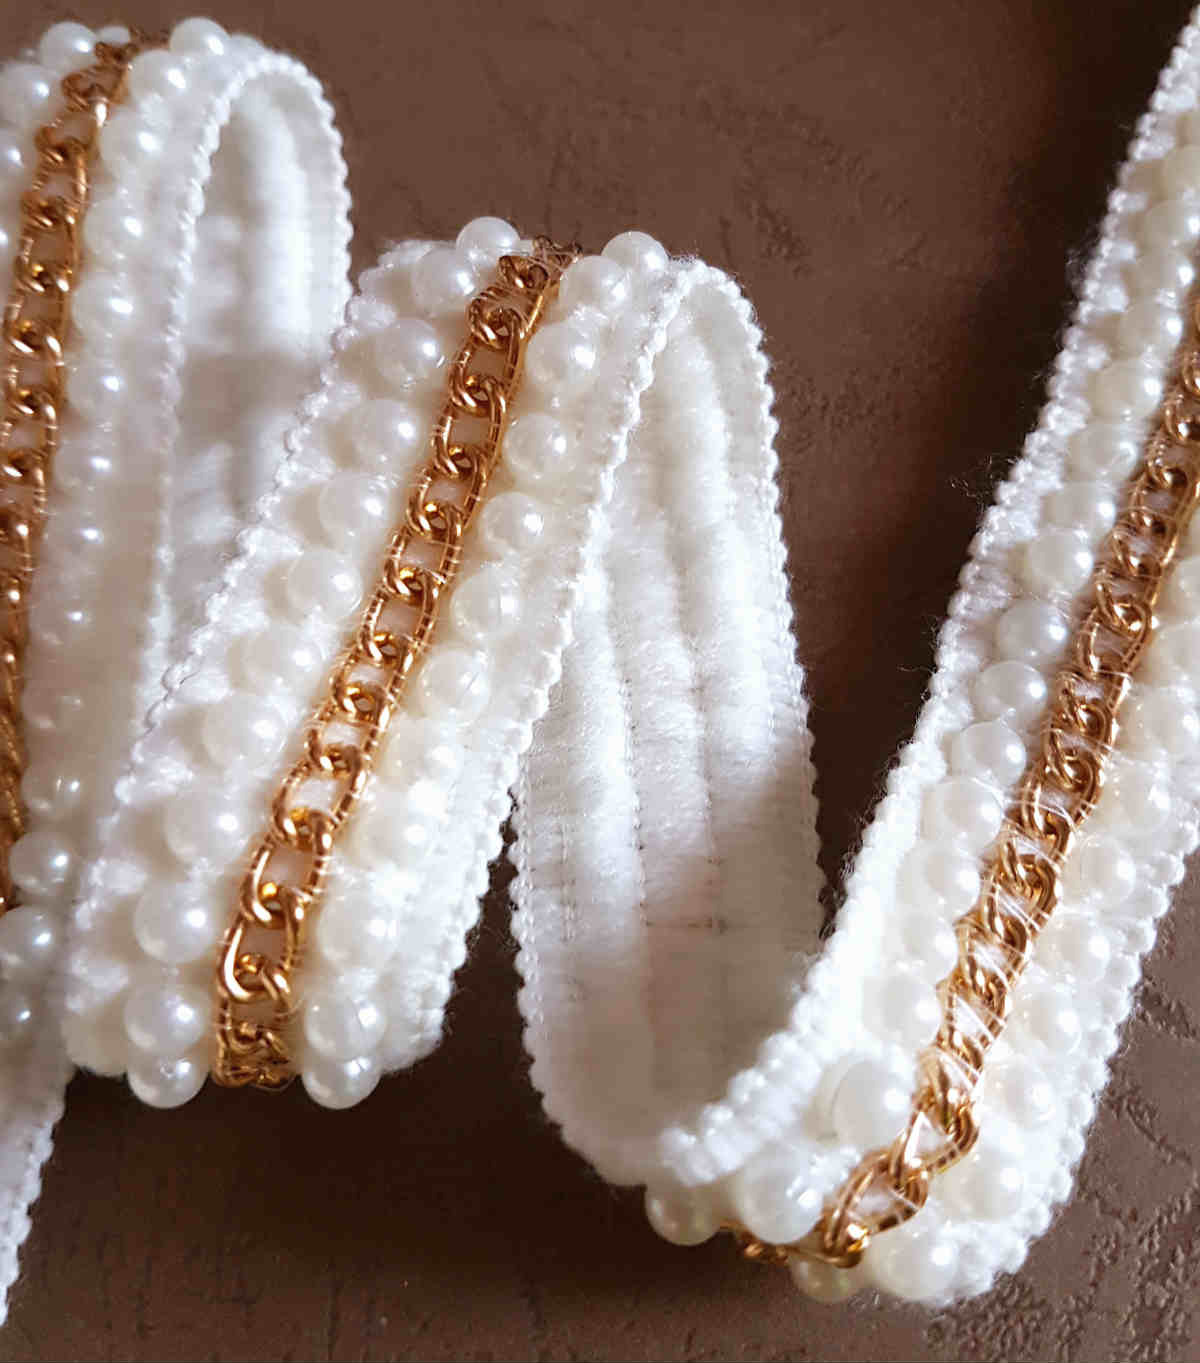 X50cm super galon blanc avec perles et chaîne métale doré style